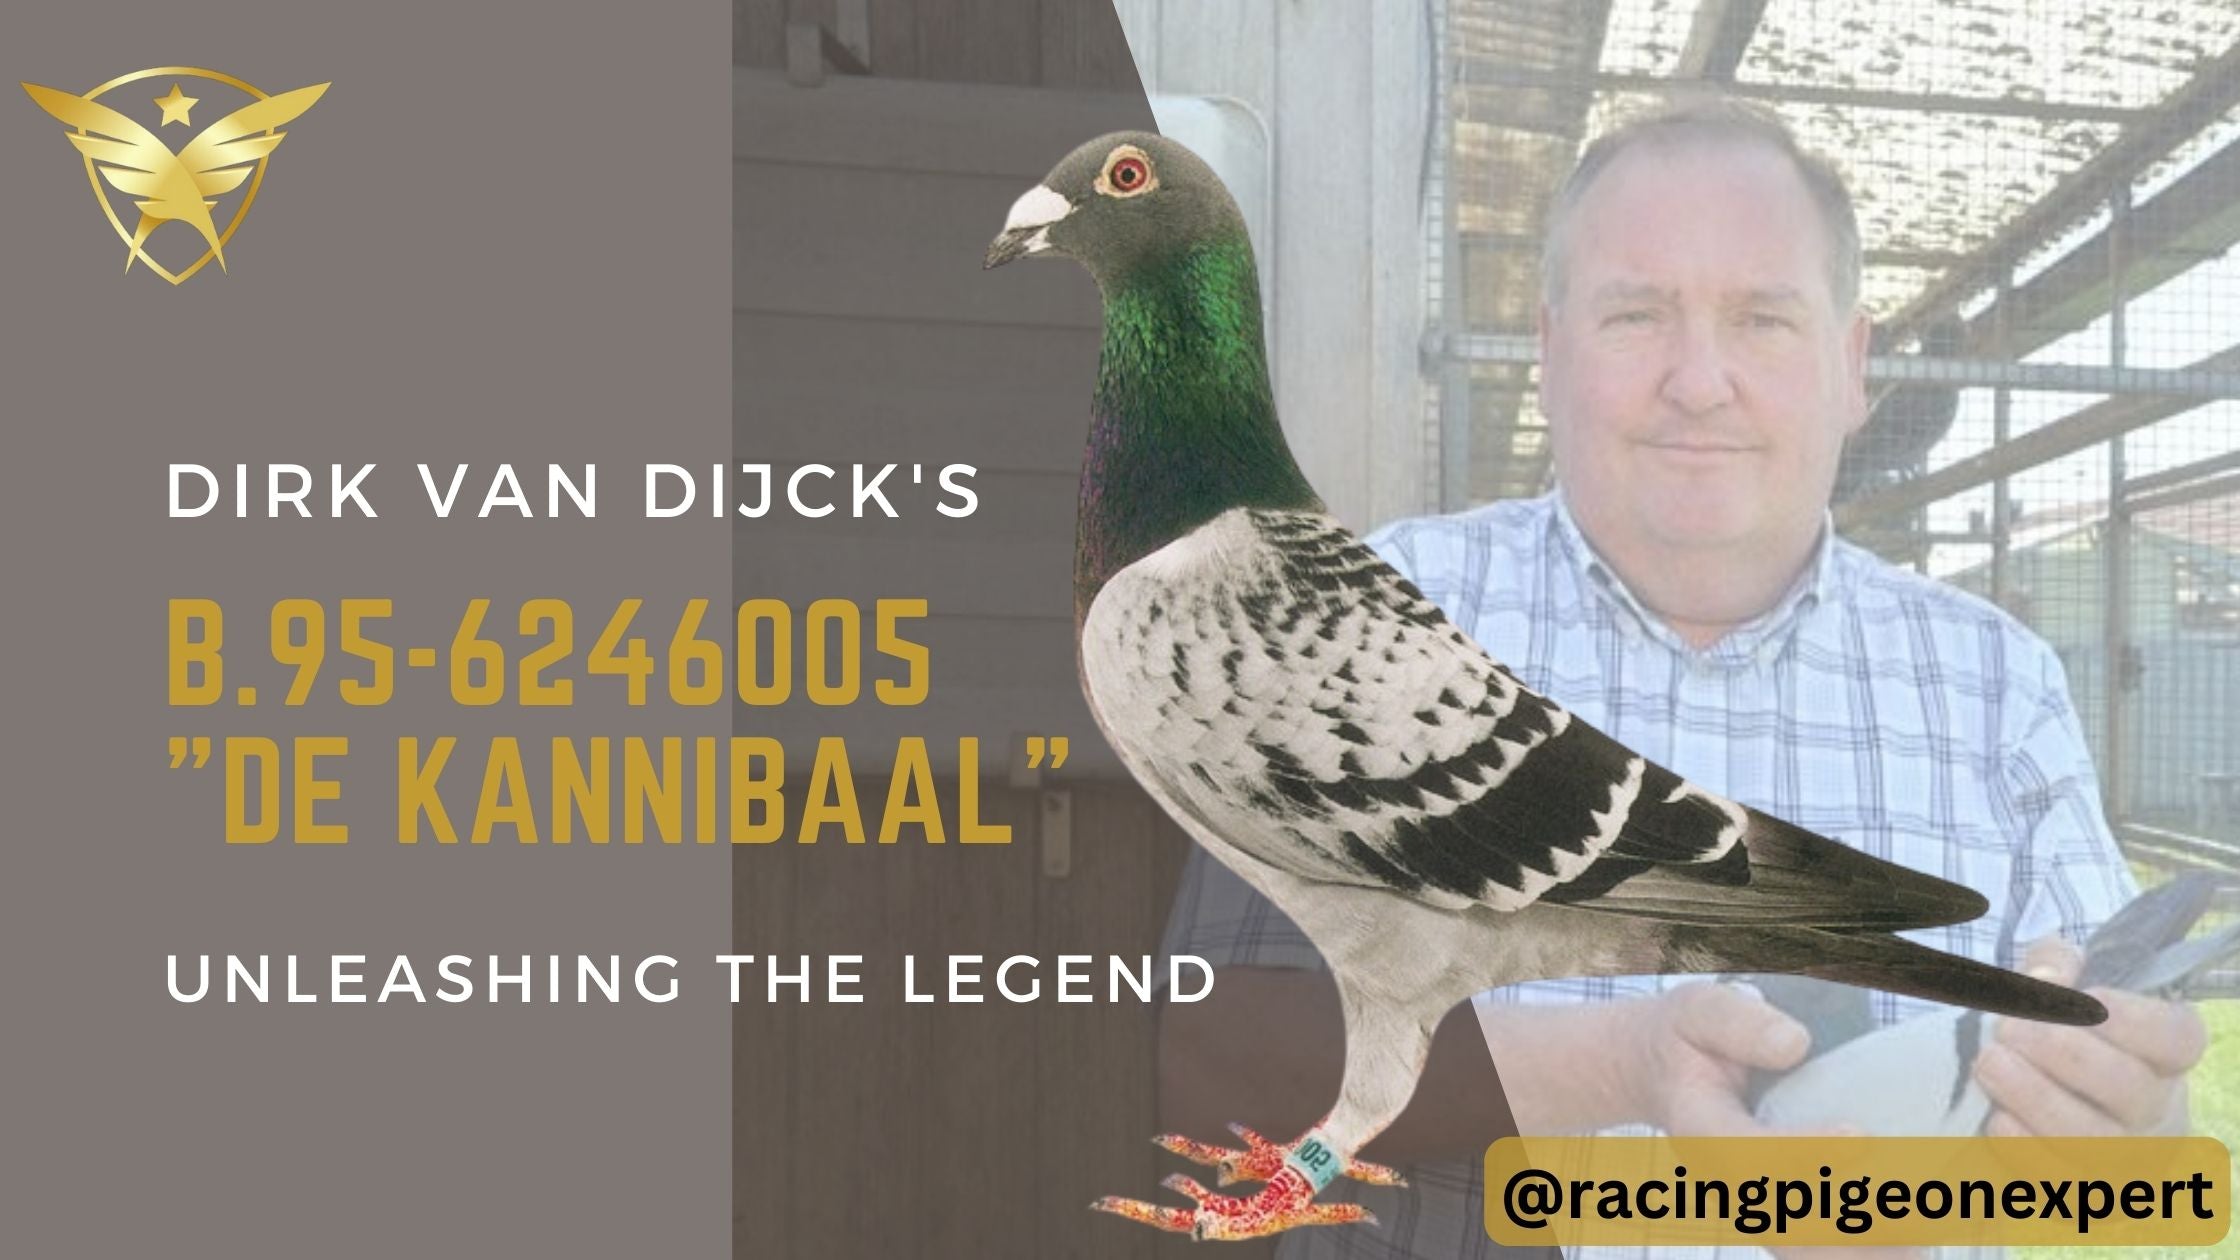 "De Kannibaal" - Unleashing Dirk van Dick's legend...